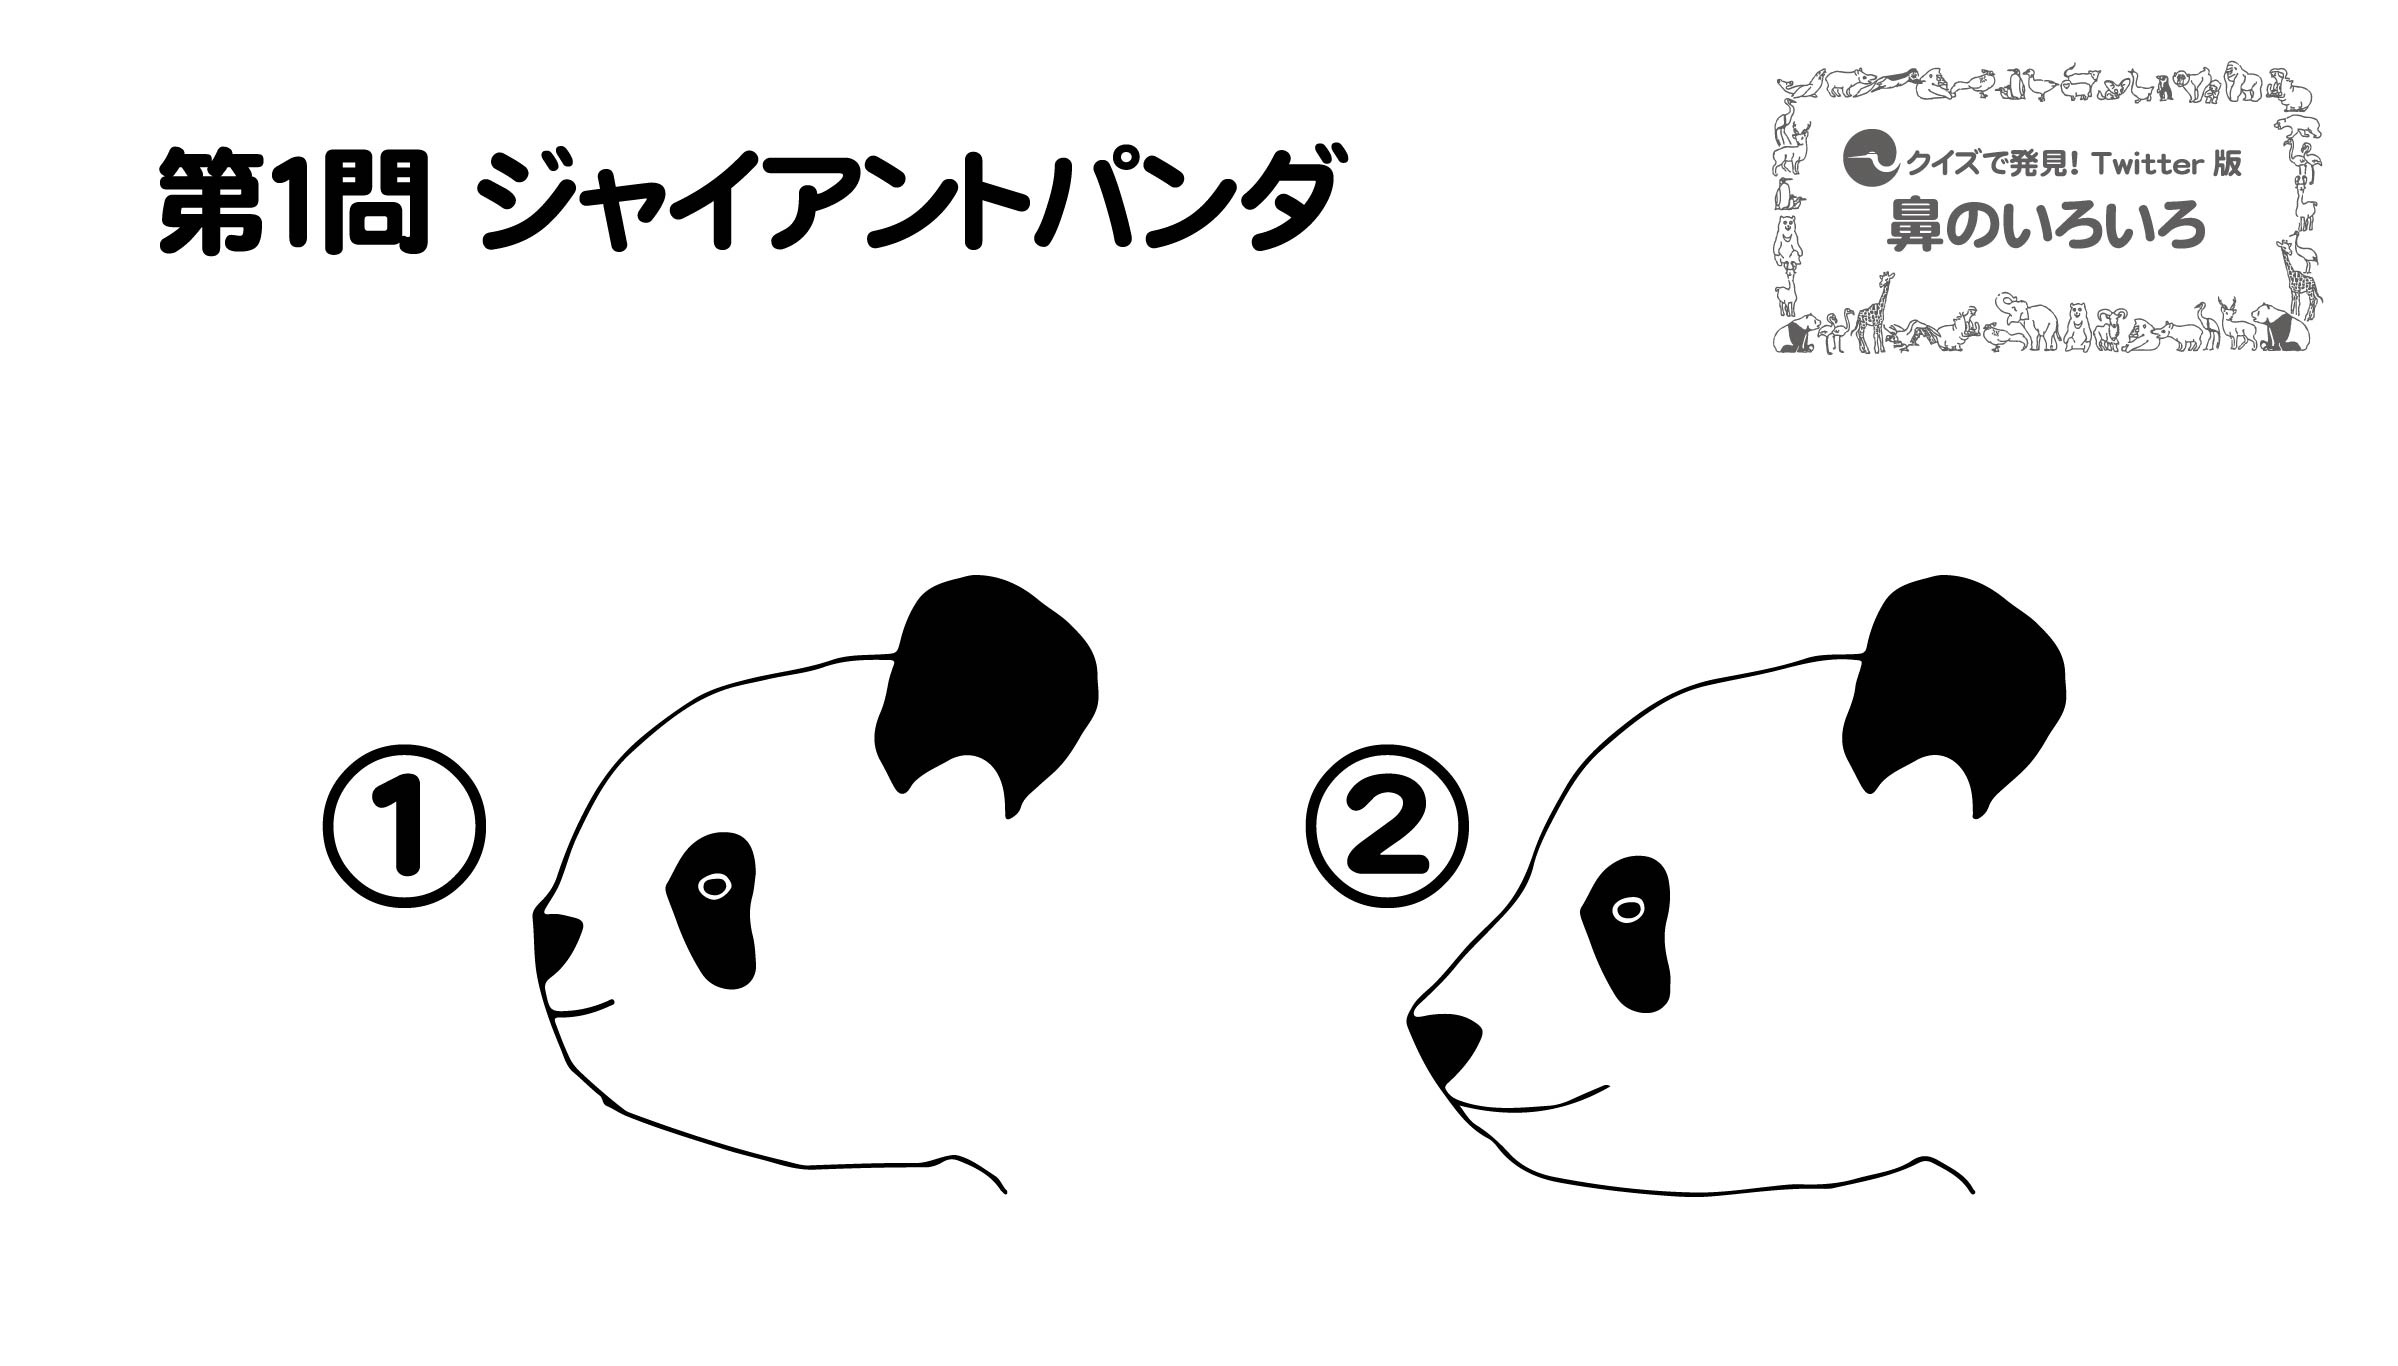 上野動物園 公式 餌のタケも におい で選びます ジャイアントパンダ T Co R0nmu45hvf Twitter